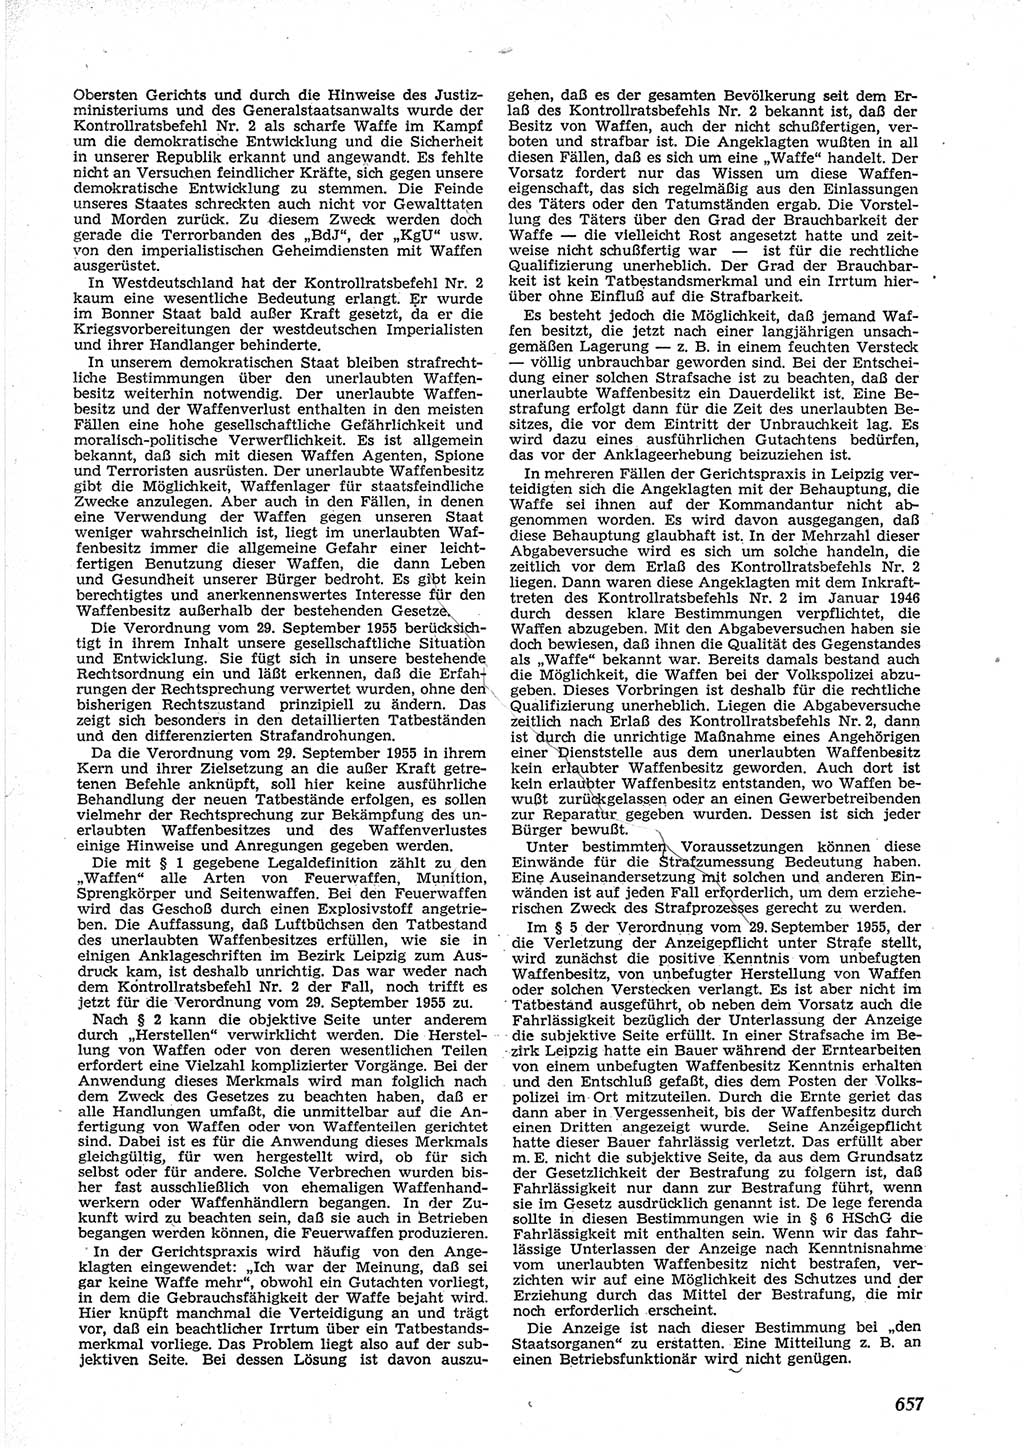 Neue Justiz (NJ), Zeitschrift für Recht und Rechtswissenschaft [Deutsche Demokratische Republik (DDR)], 9. Jahrgang 1955, Seite 657 (NJ DDR 1955, S. 657)